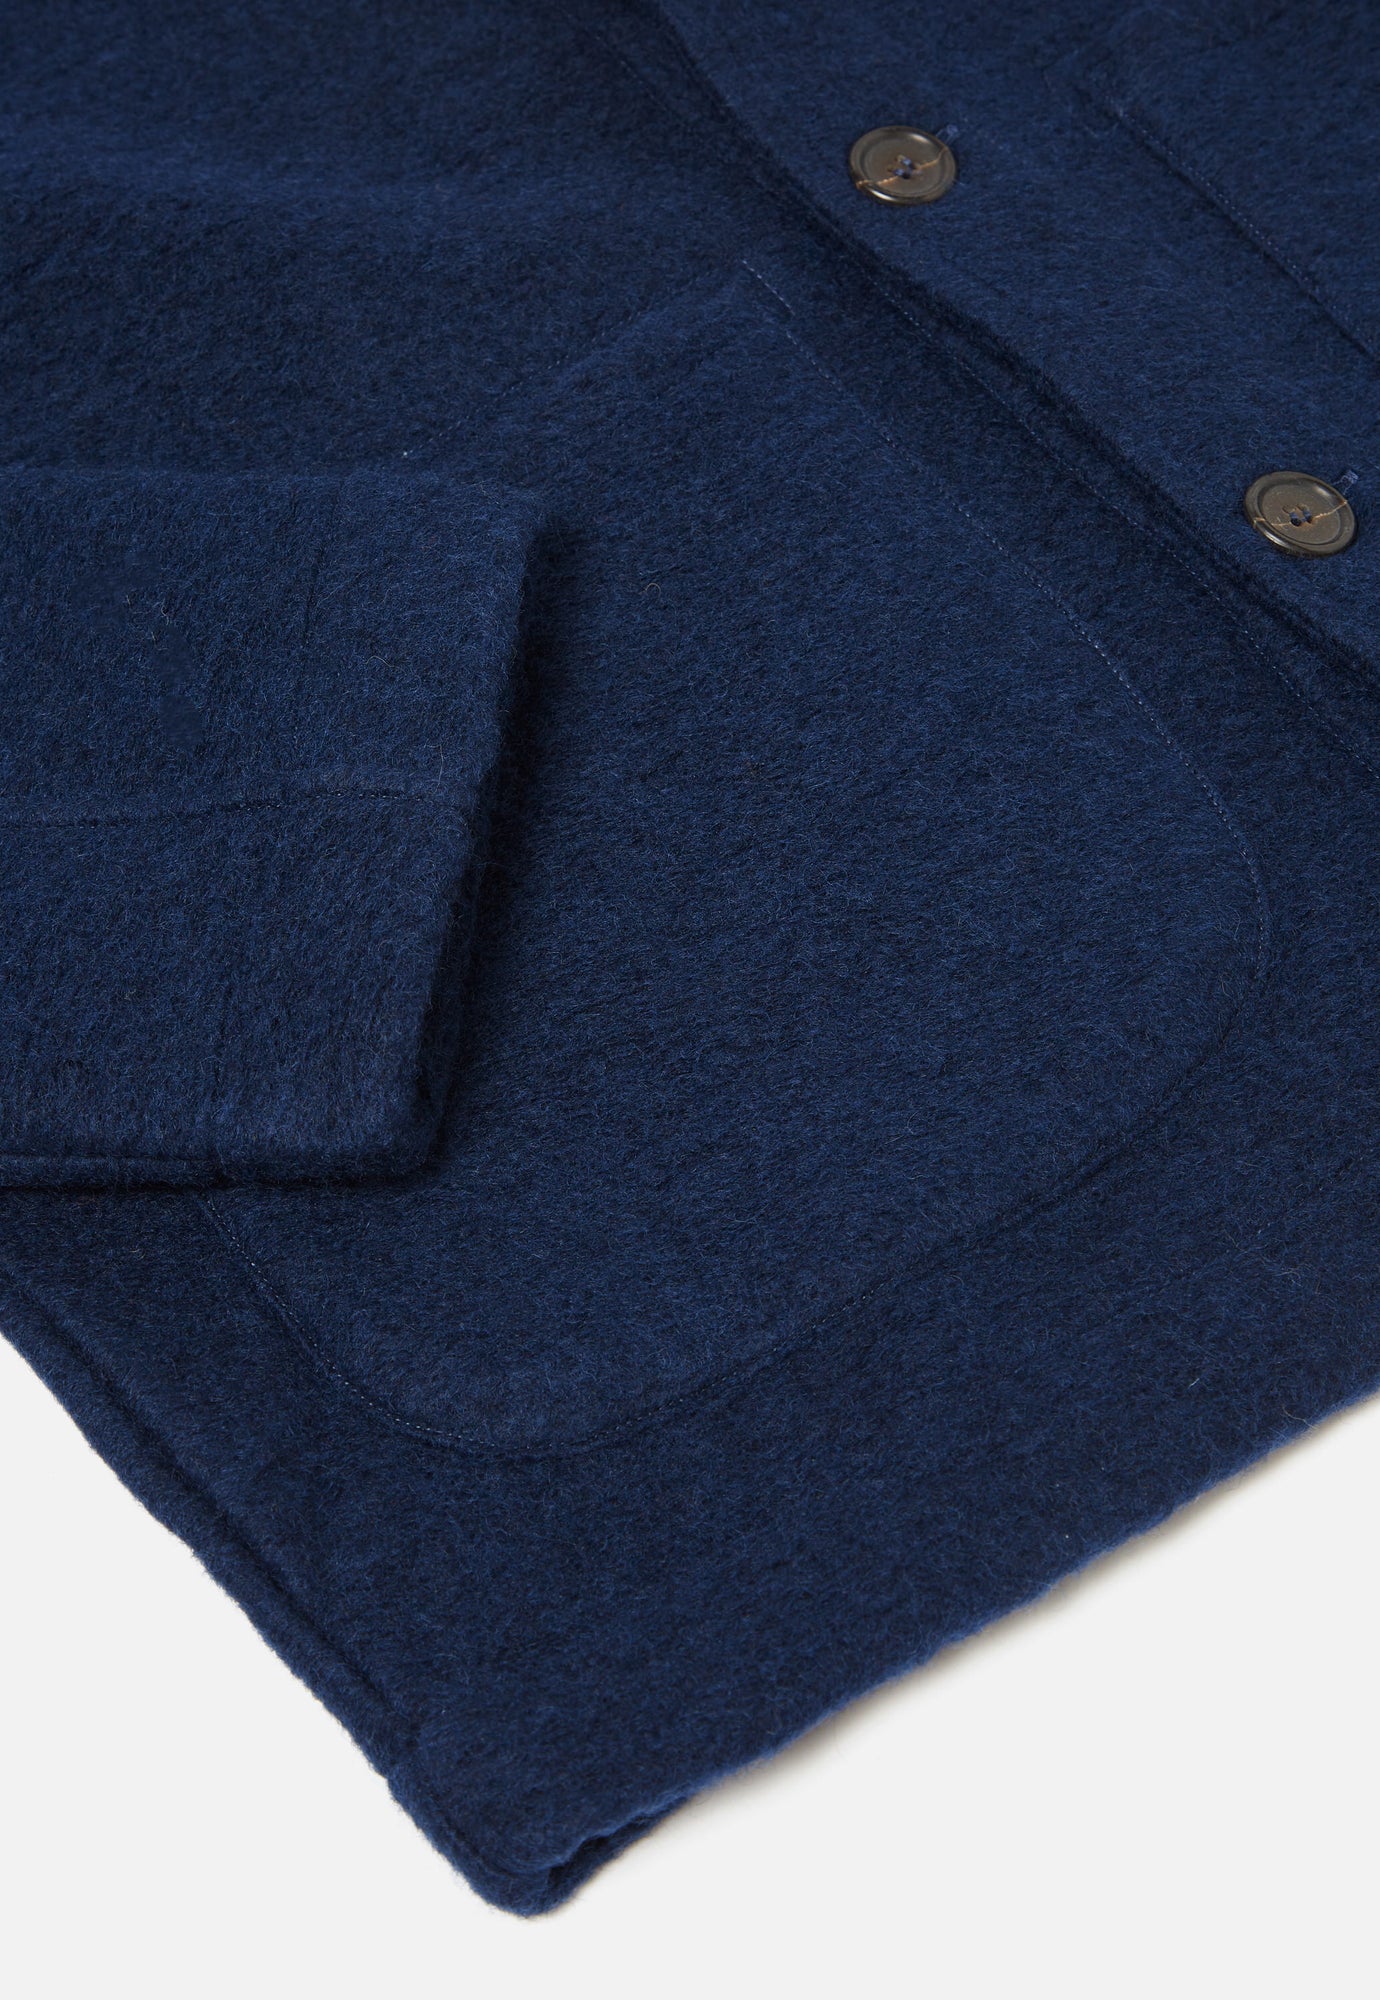 Universal Works Field Jacket in Indigo Wool Fleece